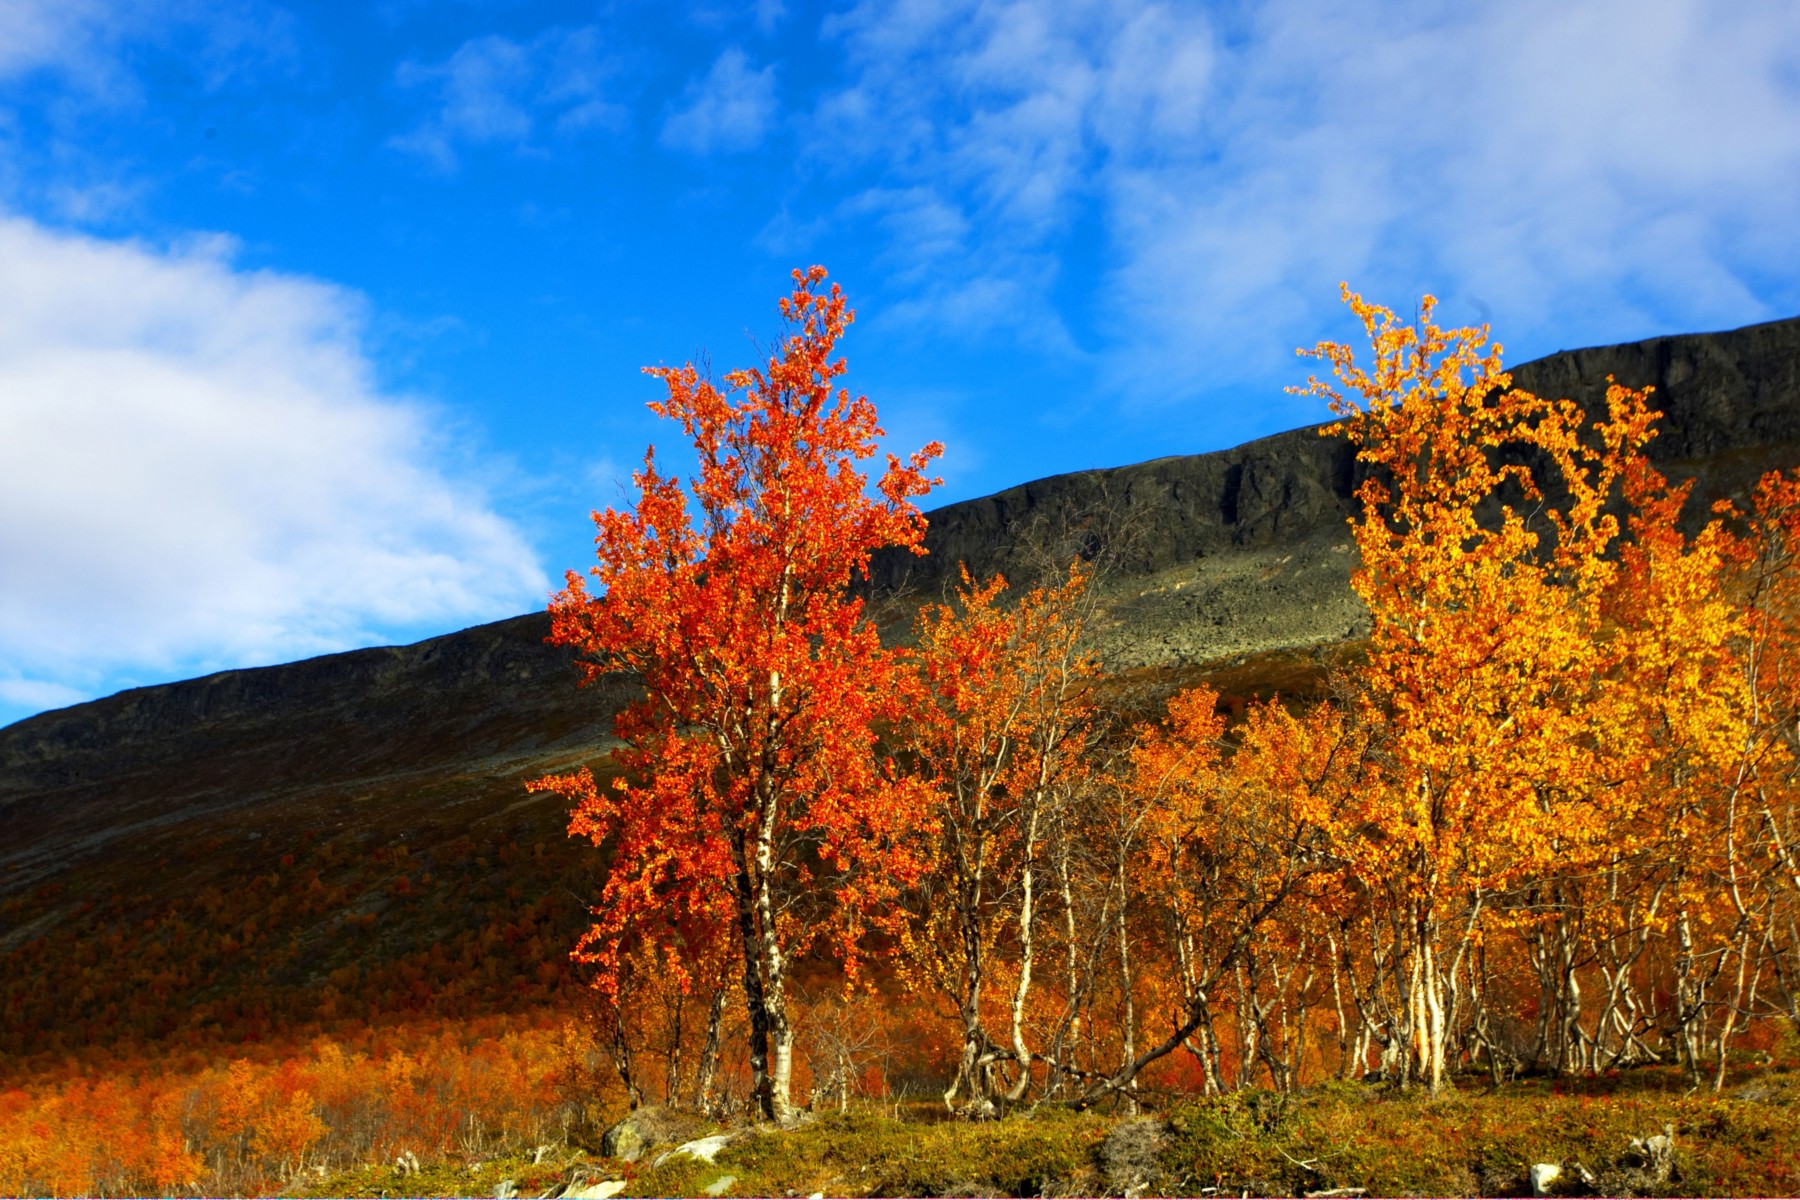 Im Vordergrund stehen mehrere Bäume mit rotem und orangefarbenem Herbstlaub; im Hintergrund erblickt man einen grünen Hügel und blauen Himmel.